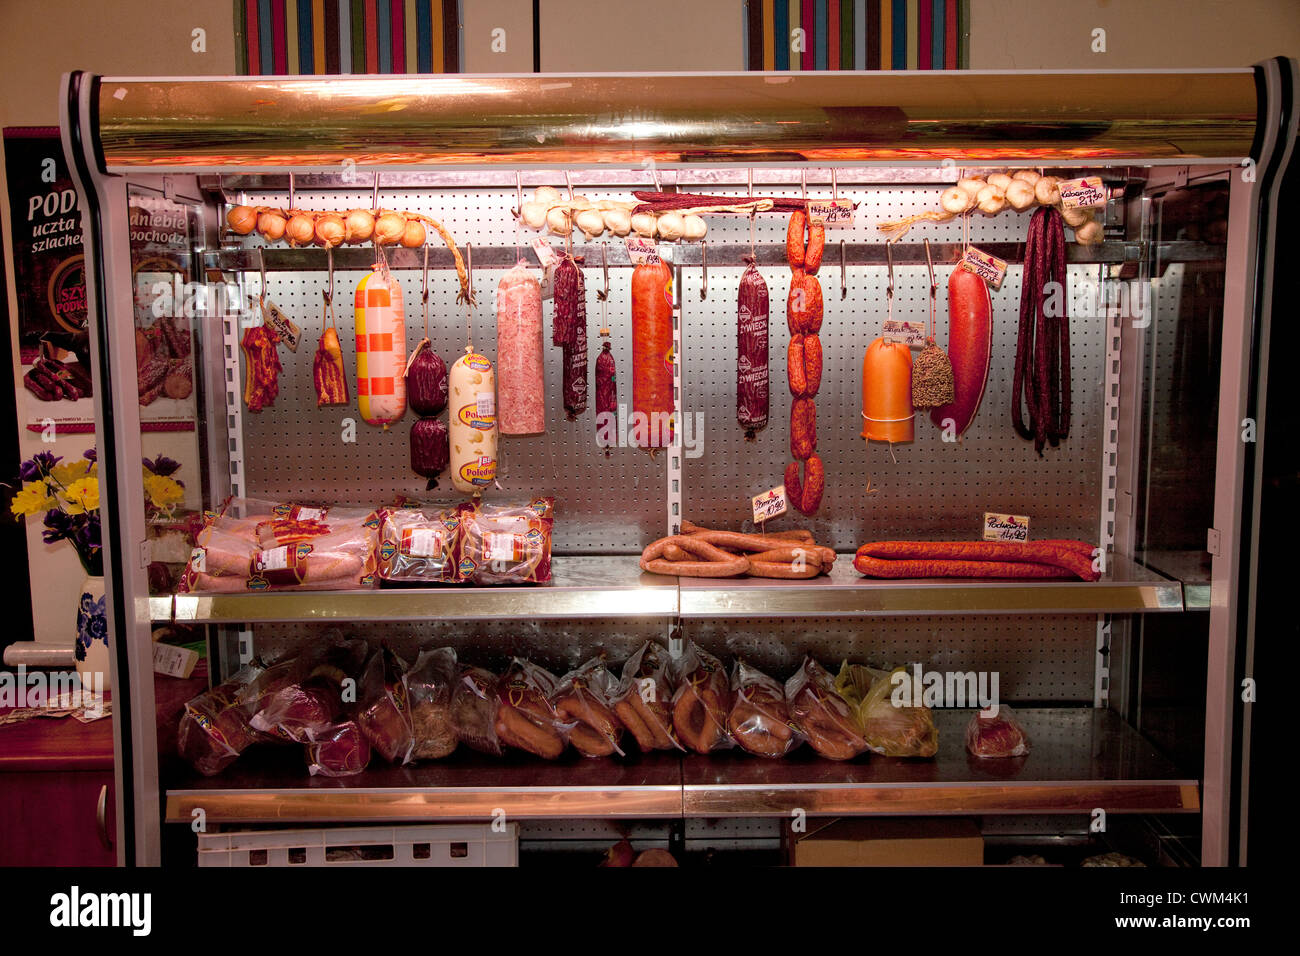 Carne polacca dipartimento nel retro del negozio di alimentari la visualizzazione di una varietà di salsicce e kielbasa. Rzeczyca Polonia centrale Foto Stock